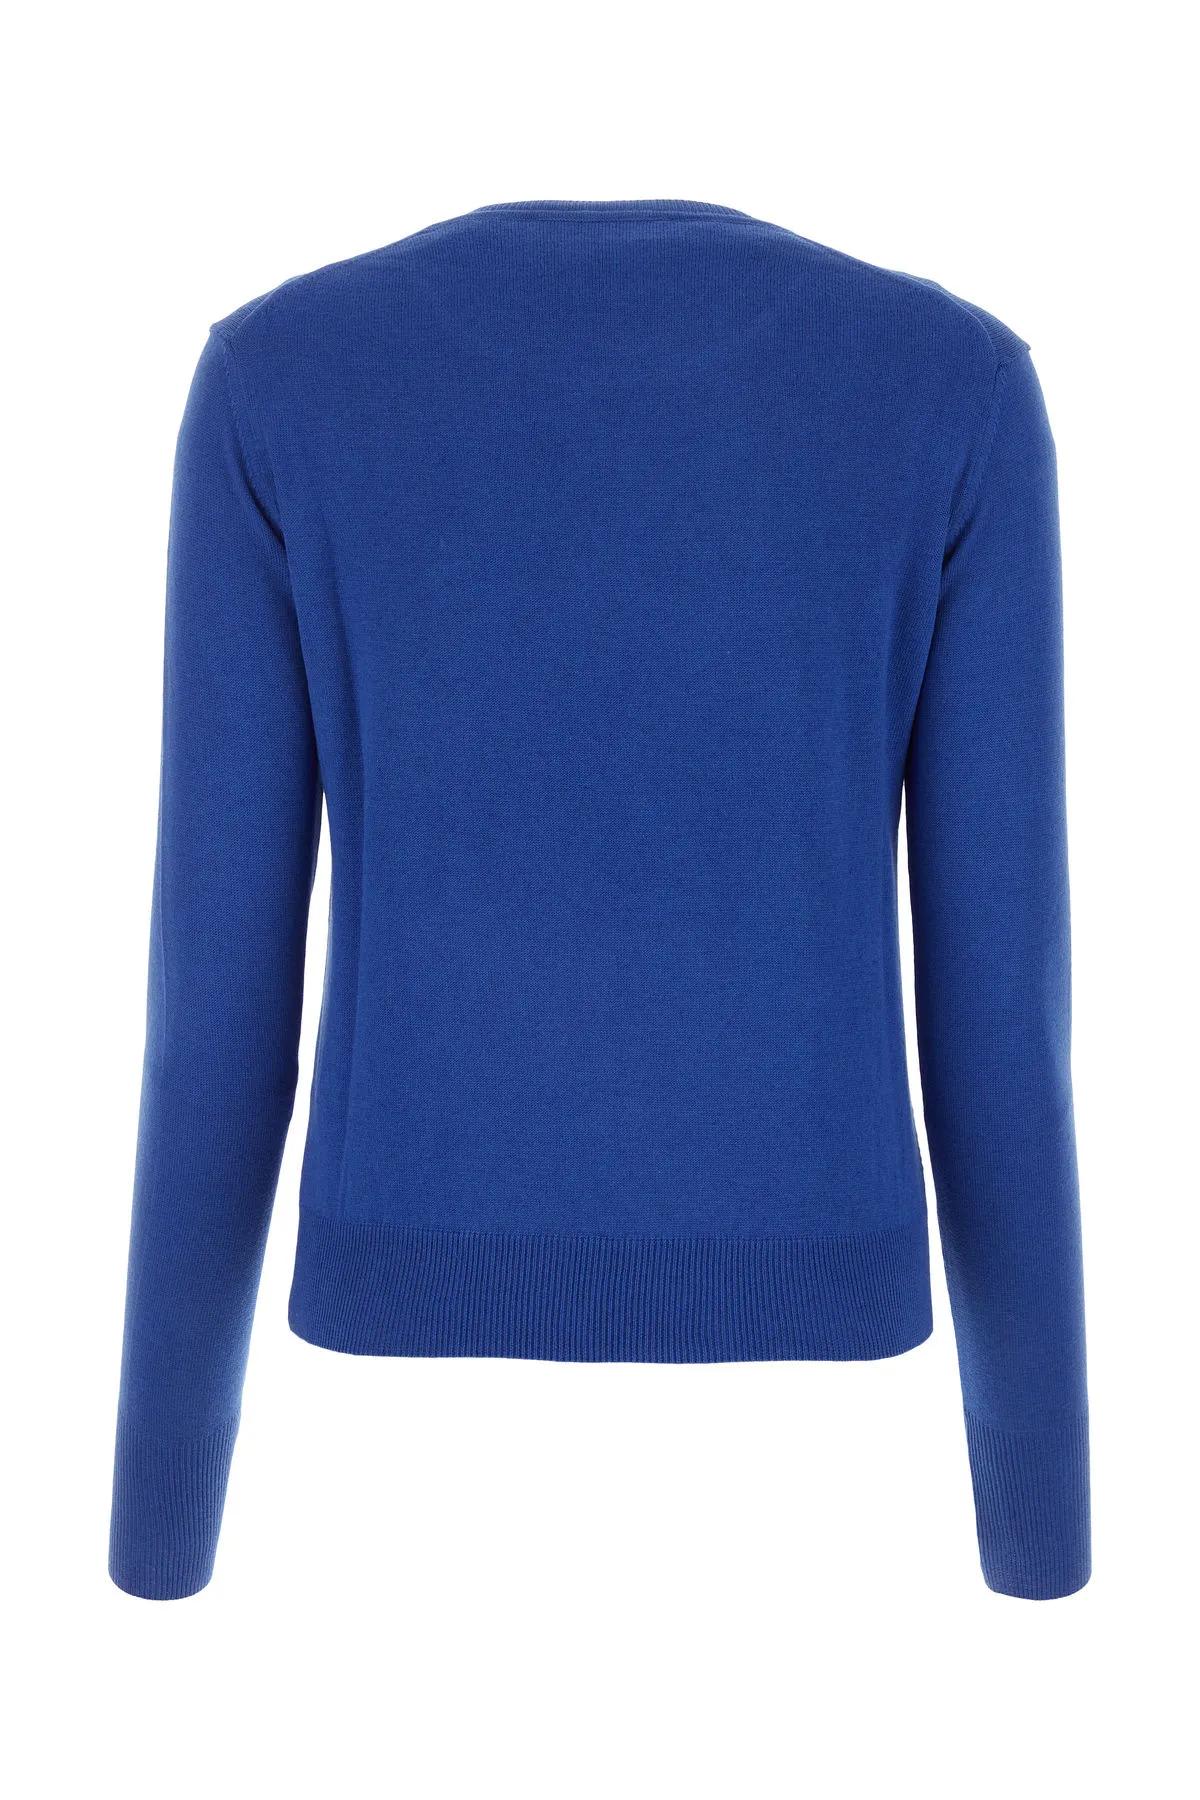 Shop Vivienne Westwood Electric Blue Cotton Blend Bea Sweater